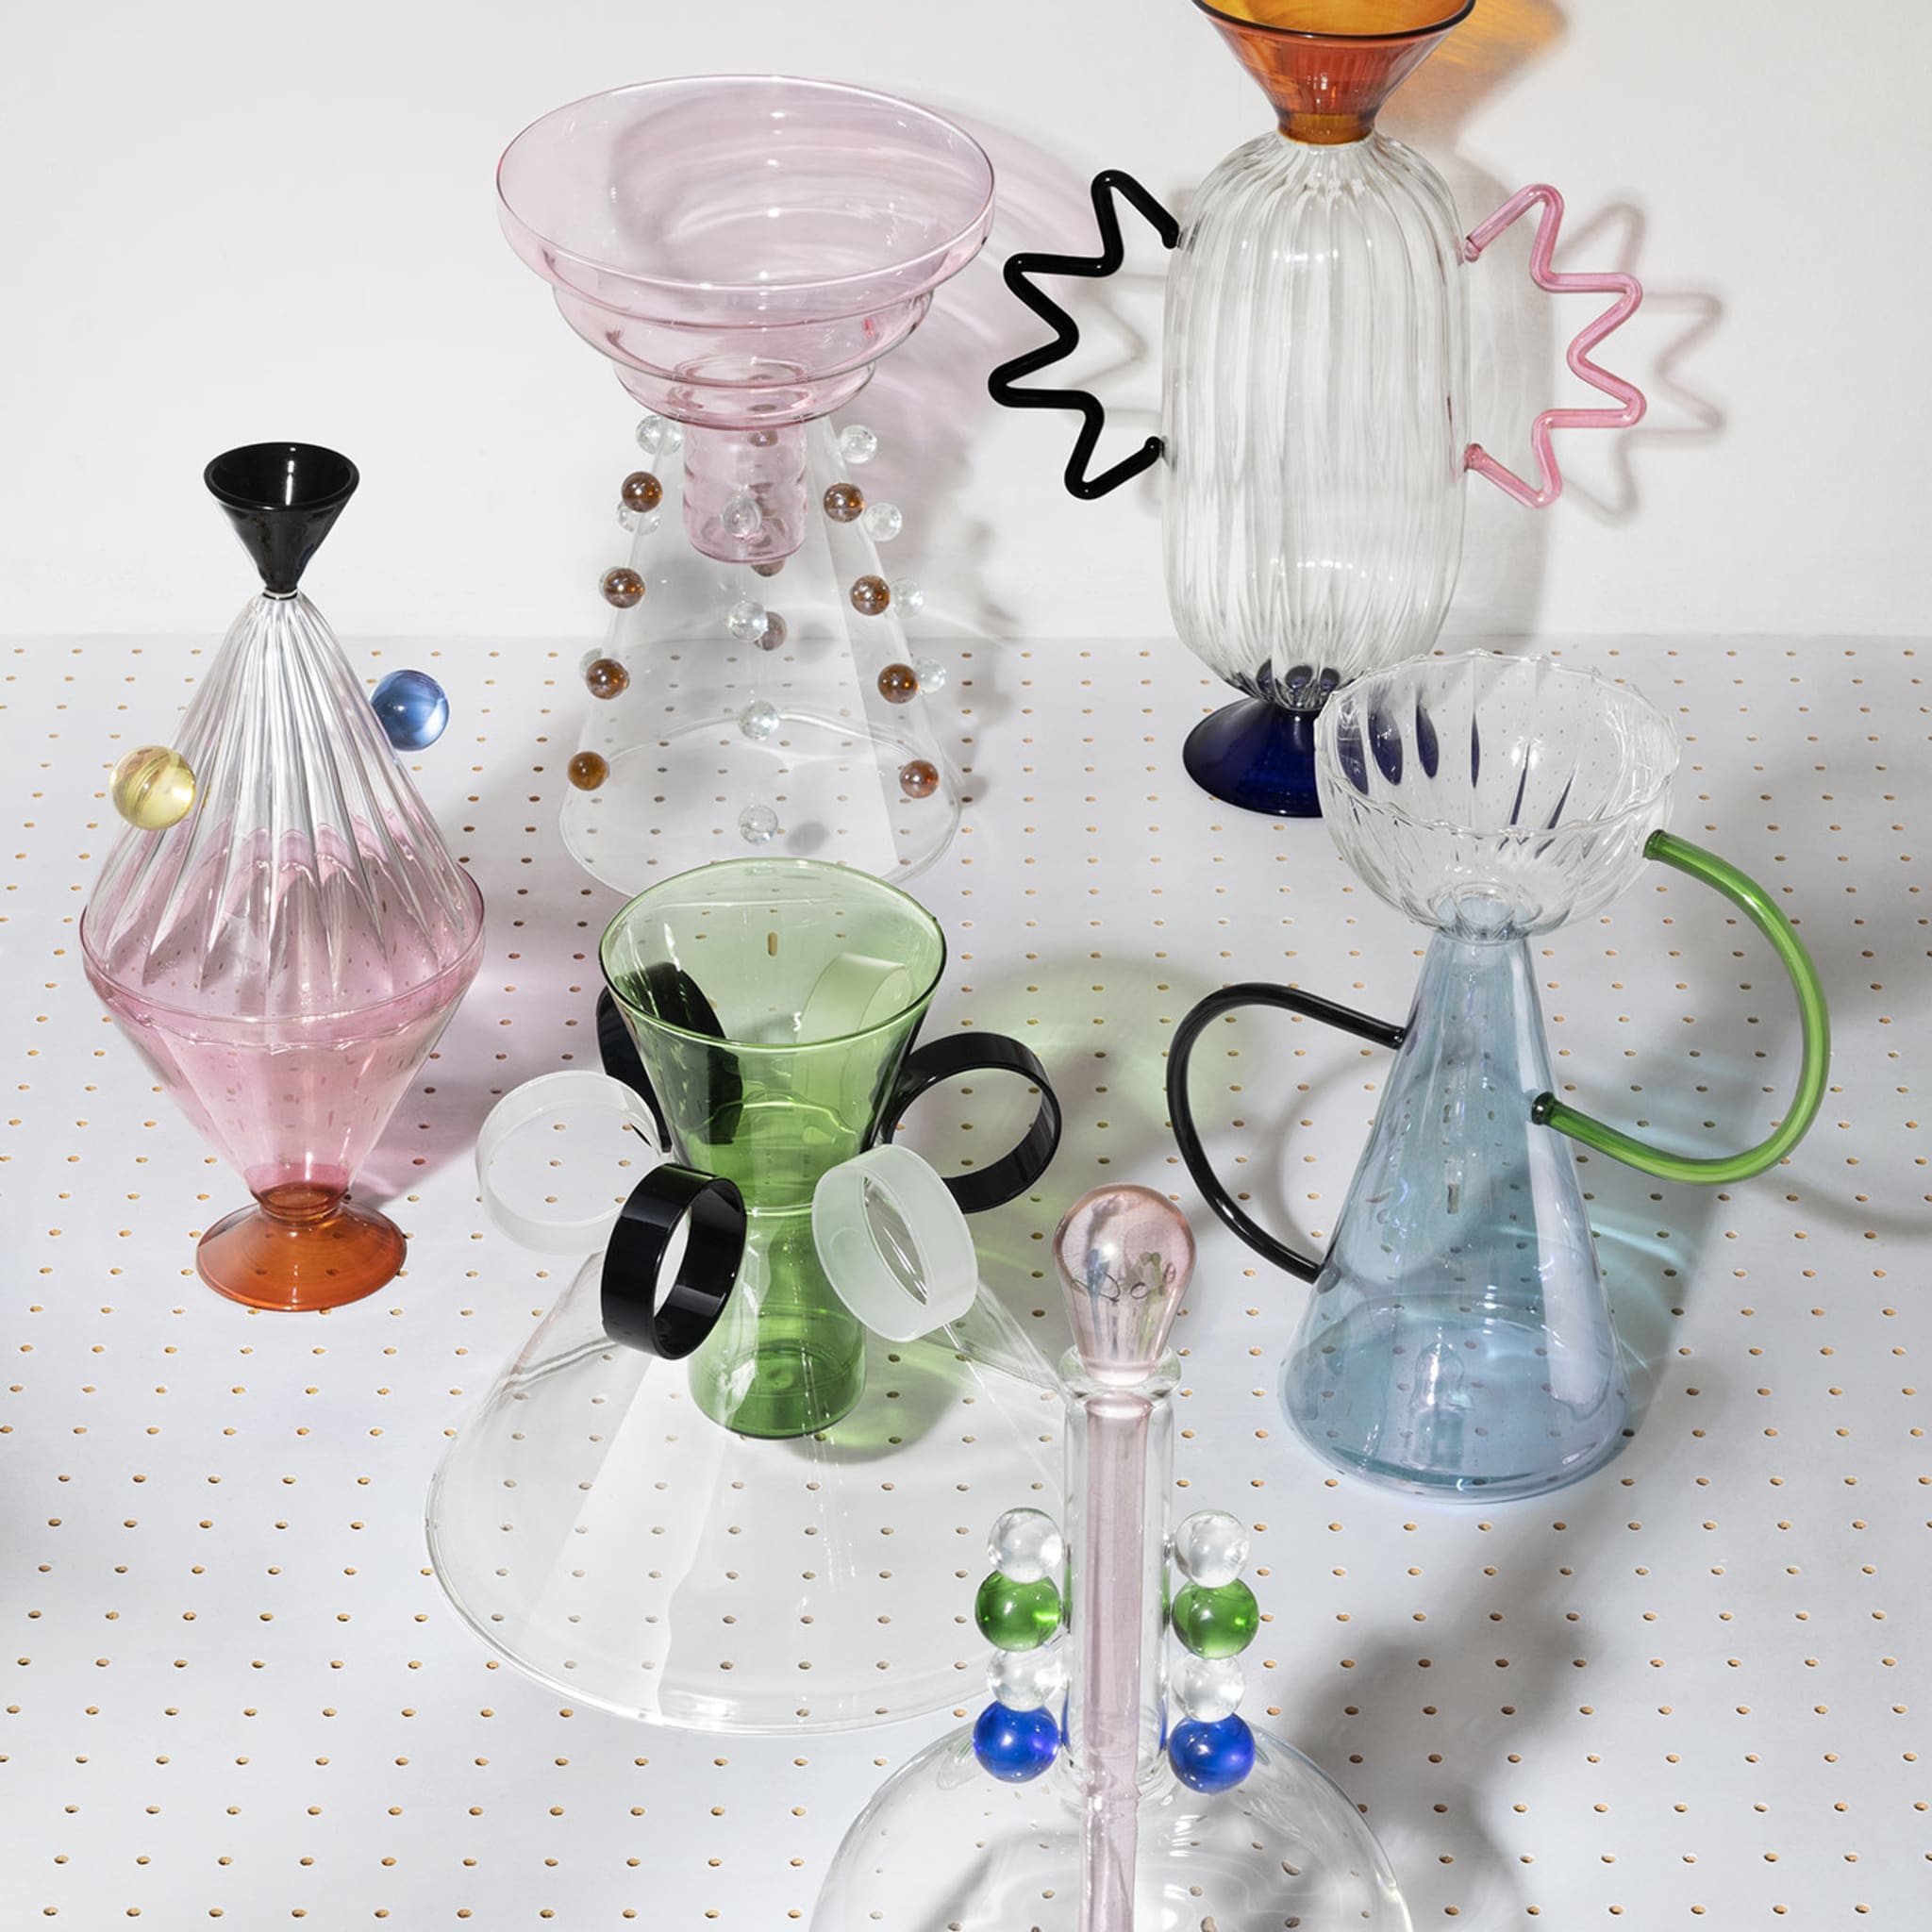 Arabesque 03 Hand-Blown Glass Vase - Alternative view 2